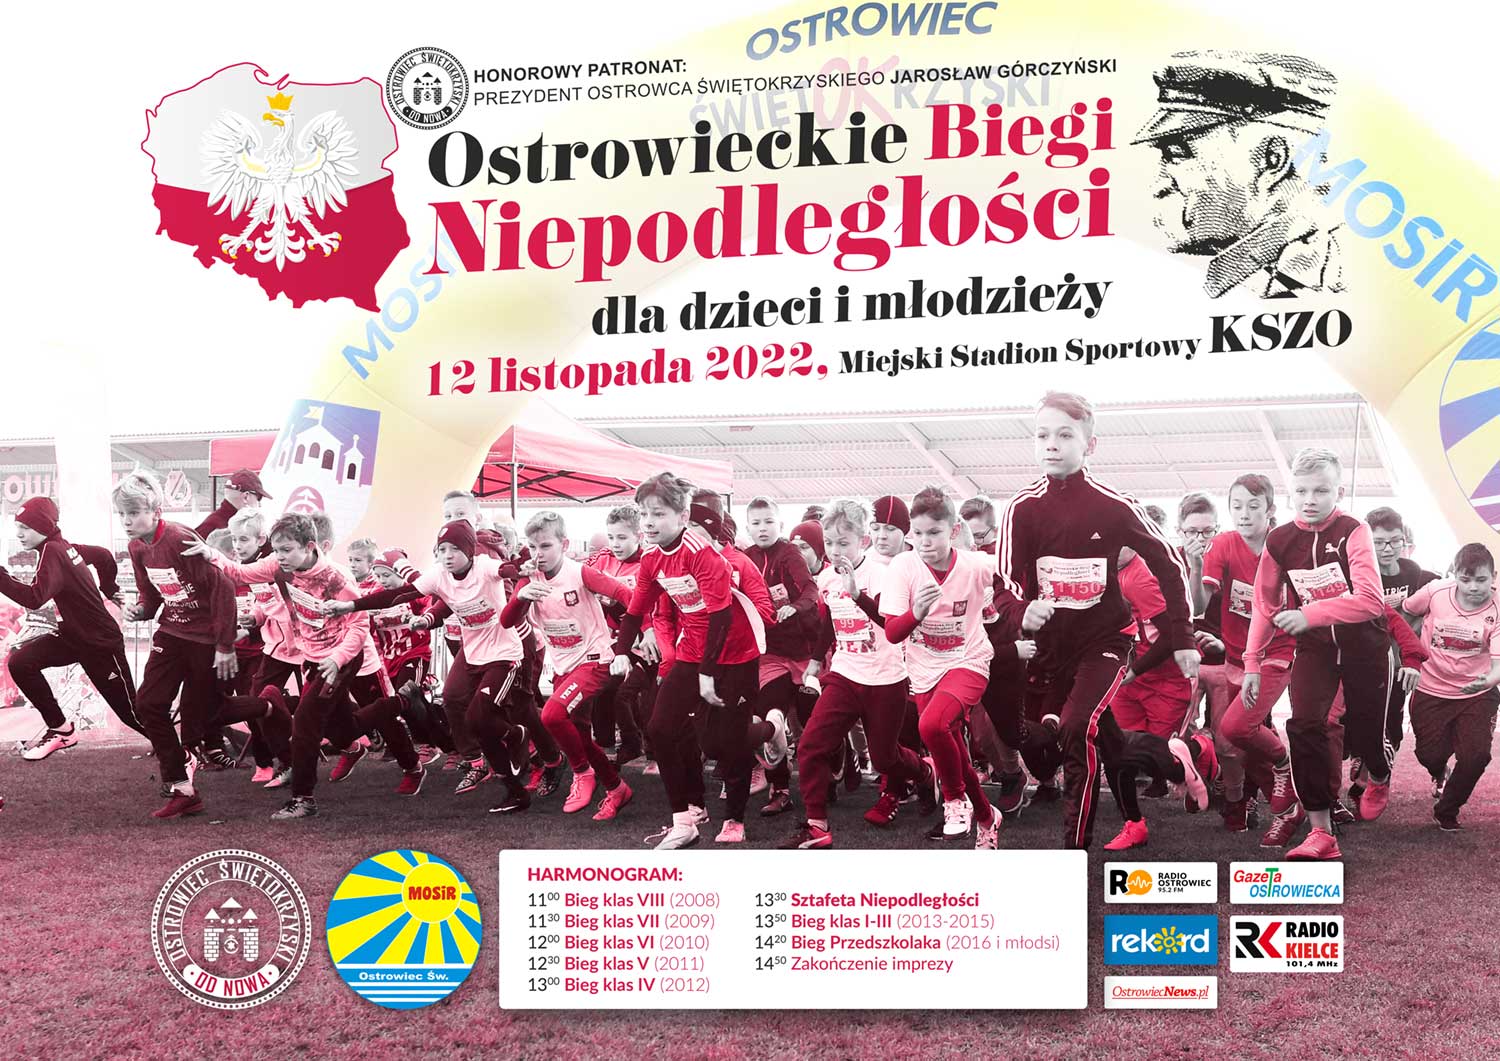 Plakat promujący Ostrowieckie Biegi Niepodległości 2022